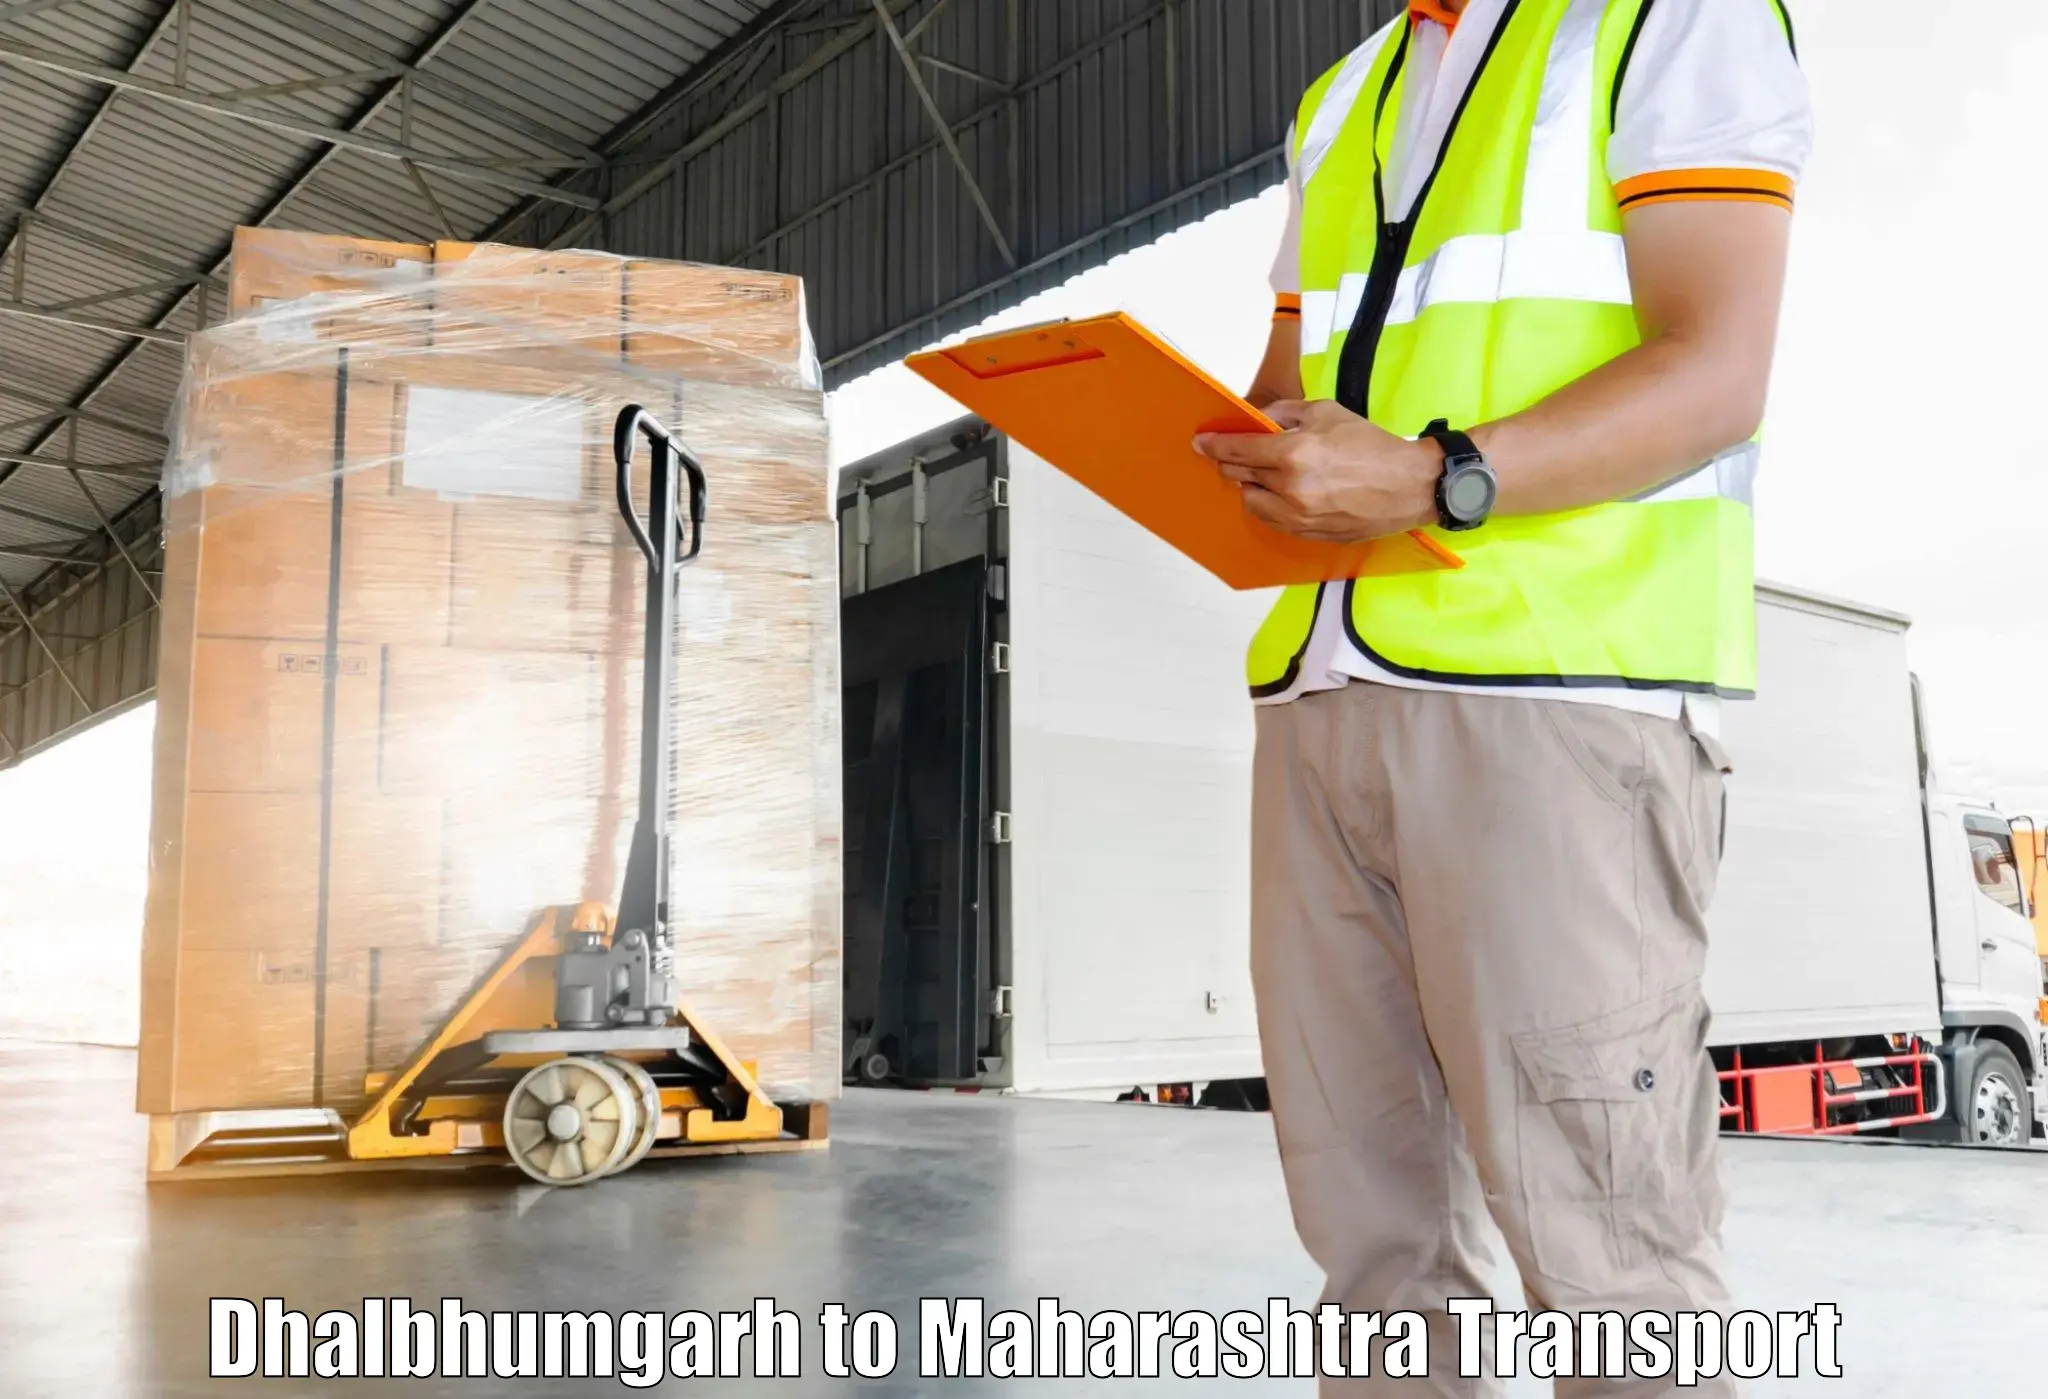 All India transport service Dhalbhumgarh to Maharashtra